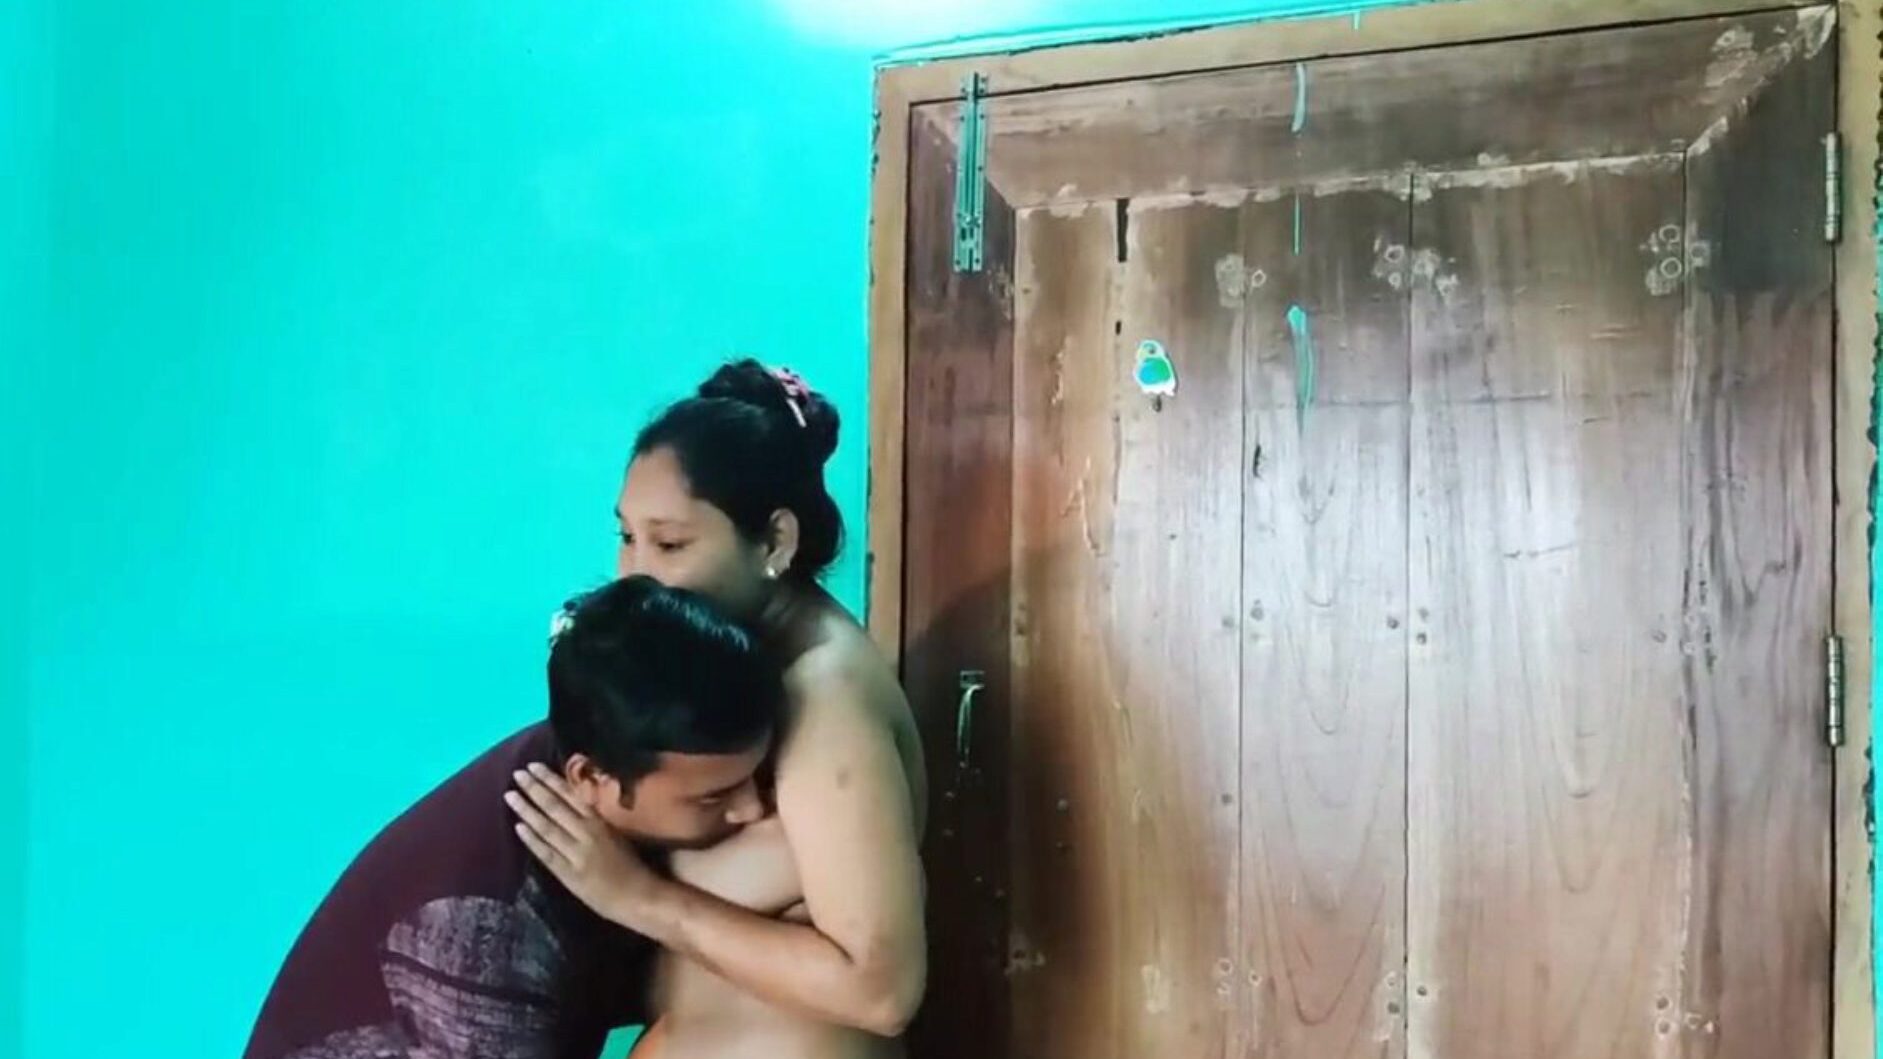 desi bengali sex video nackt, kostenlos asiatisch porno 6c: xhamster schau desi bengali sex video nackt folge auf xhamster, der fettesten hd fuck-fest rohr webressource mit tonnenweise kostenlosem asiatischen xxn sex & anal pornografie vids